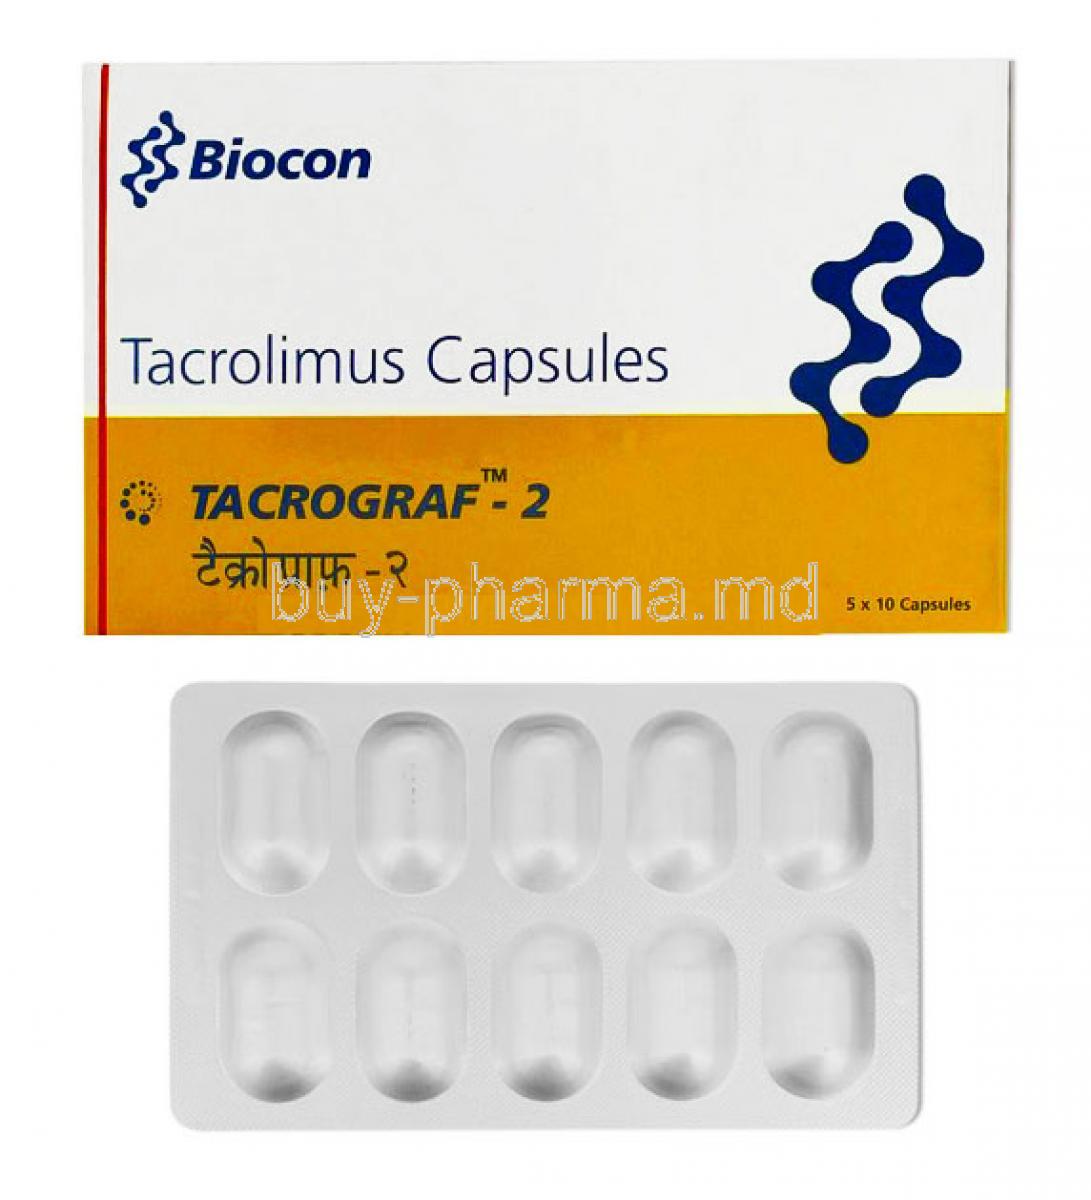 Tacrograf, Tacrolimus 2mg box and tablets